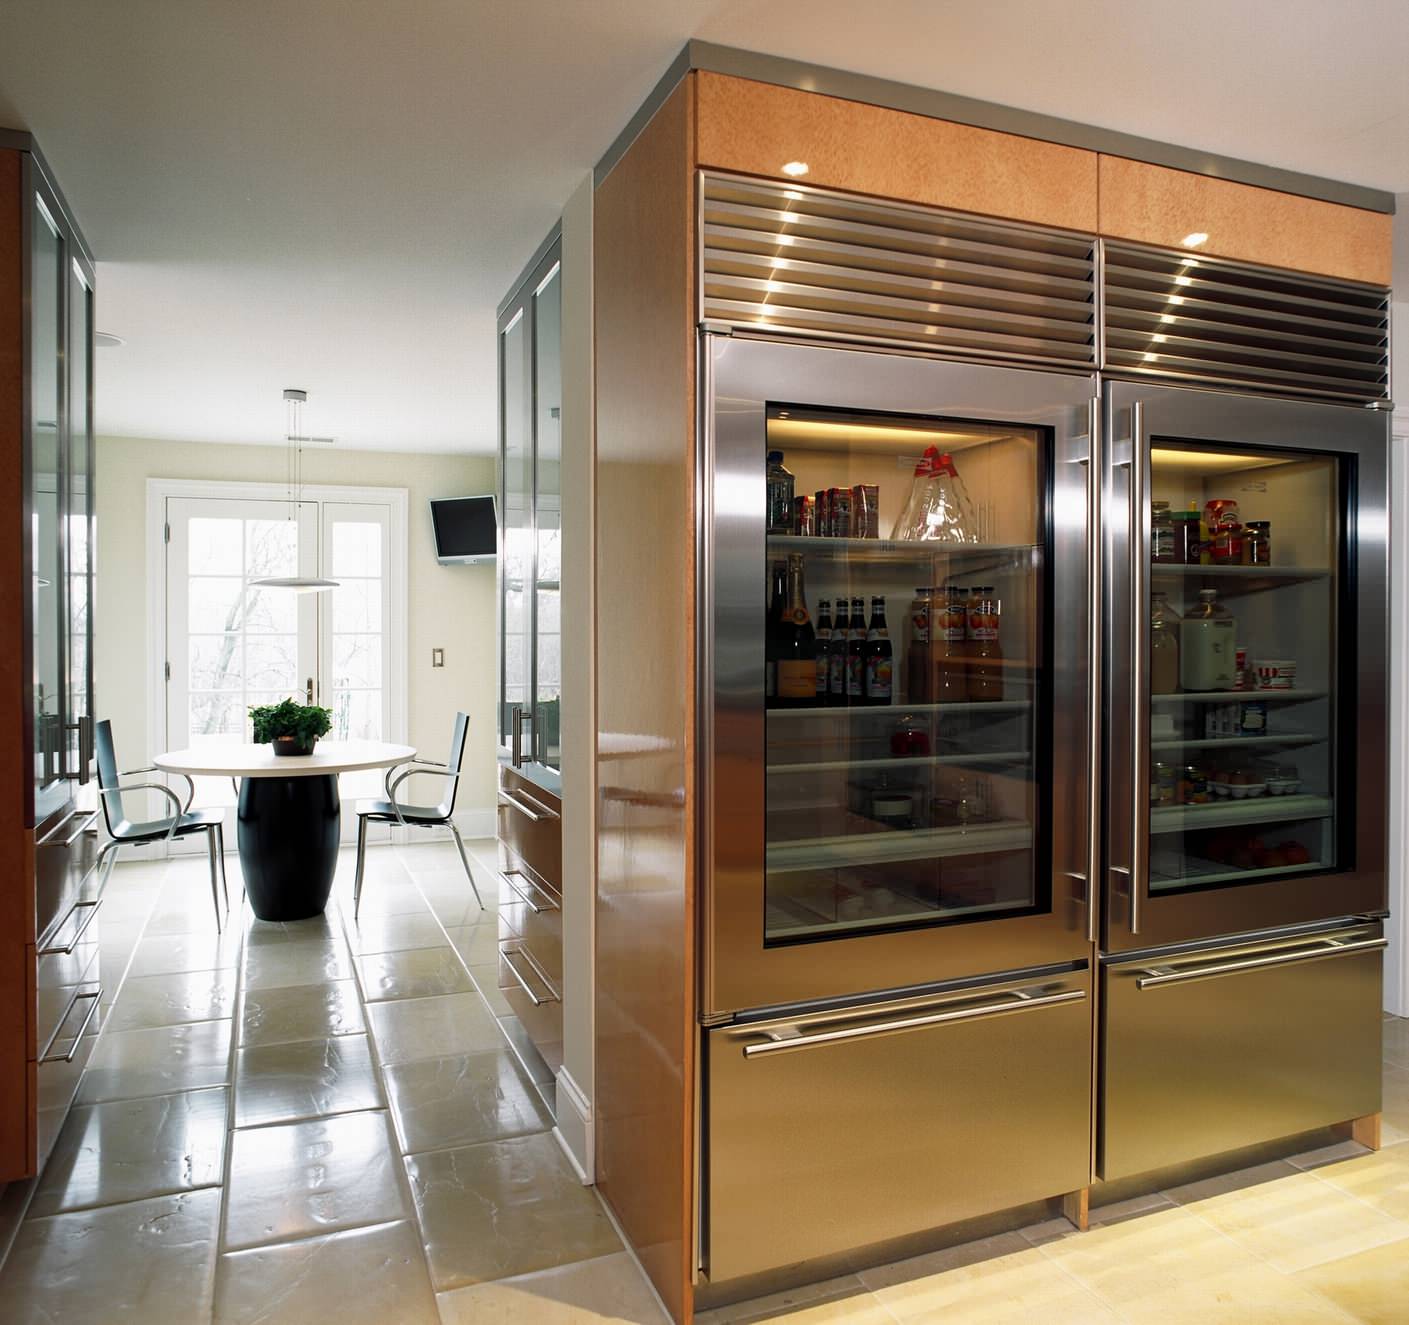 Стеклянные дверцы металлического холодильника на кухне